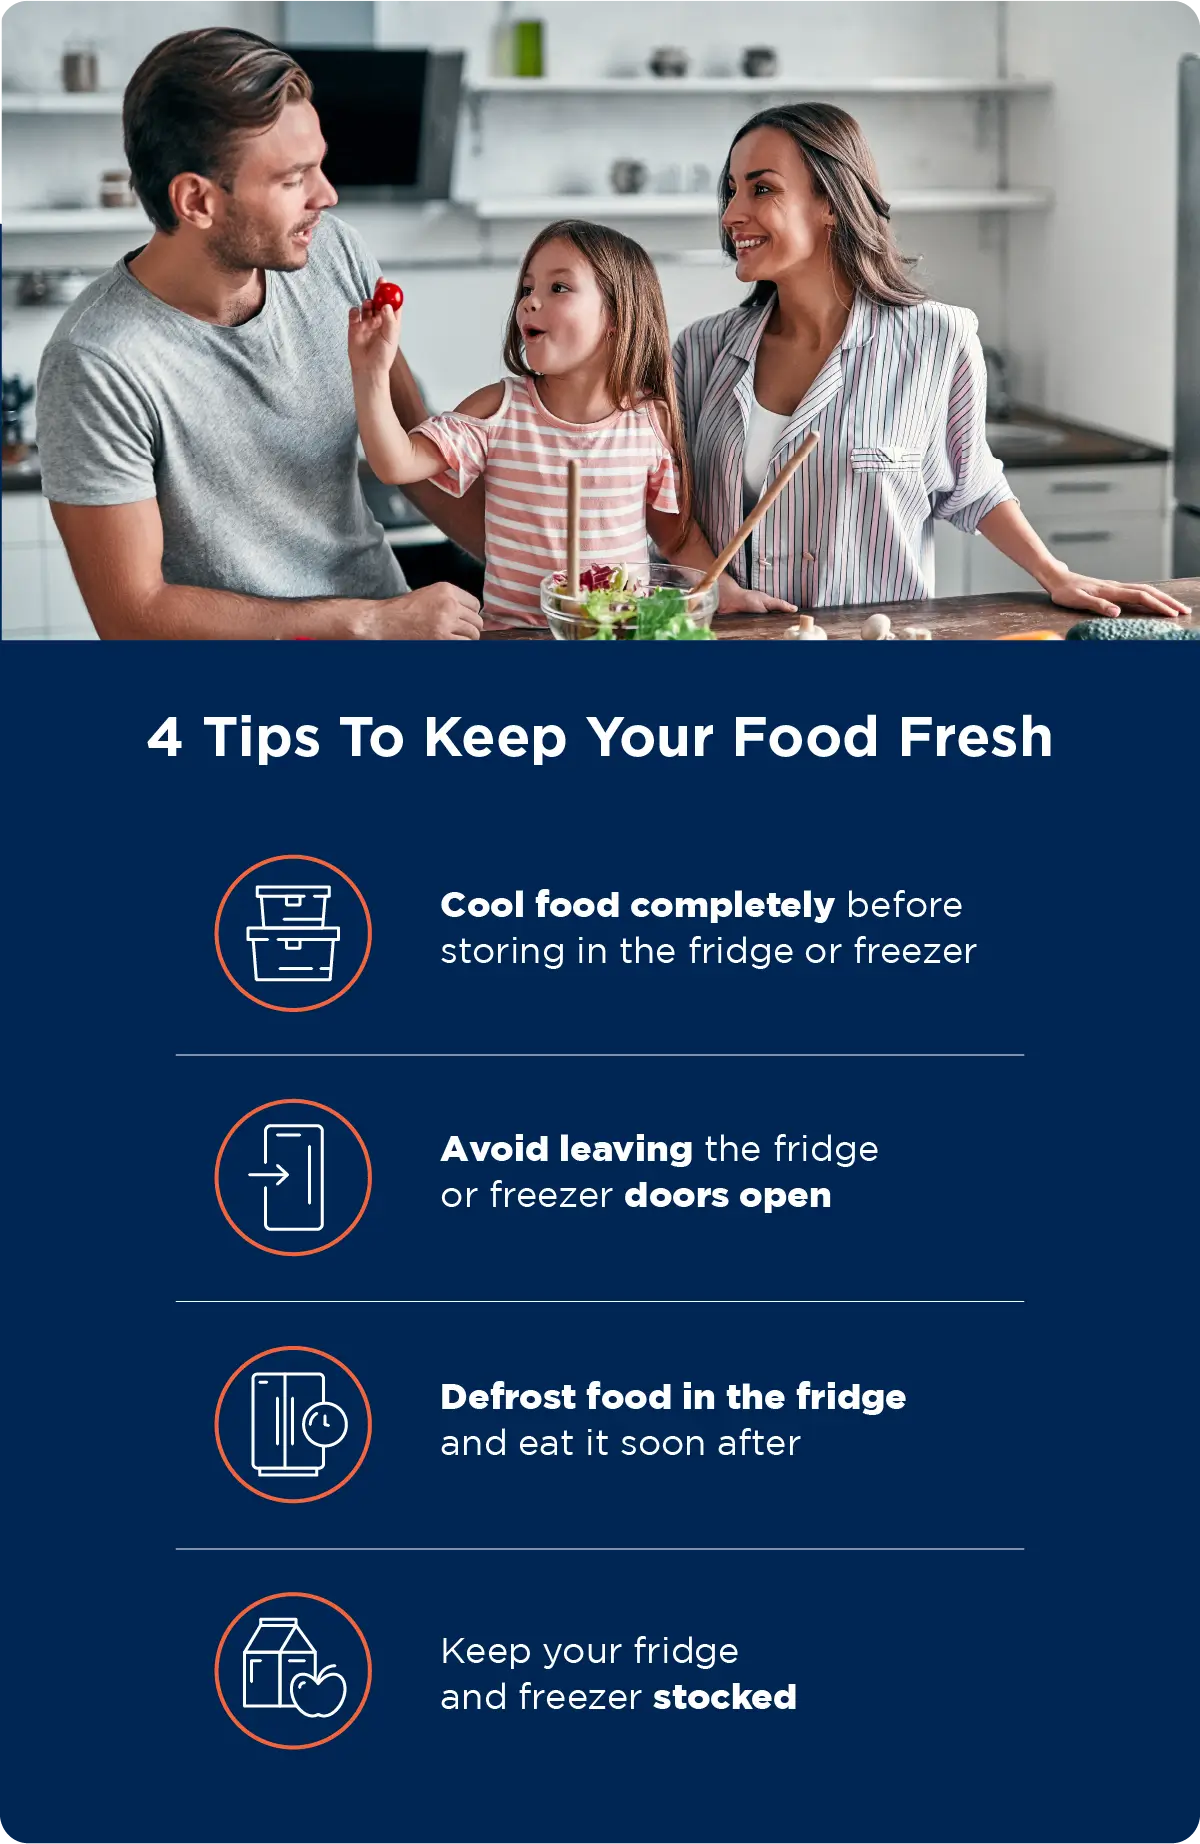 https://www.mrappliance.com/us/en-us/mr-appliance/_assets/expert-tips/images/mra-blog-4-tips-to-keep-your-food-fresh.webp